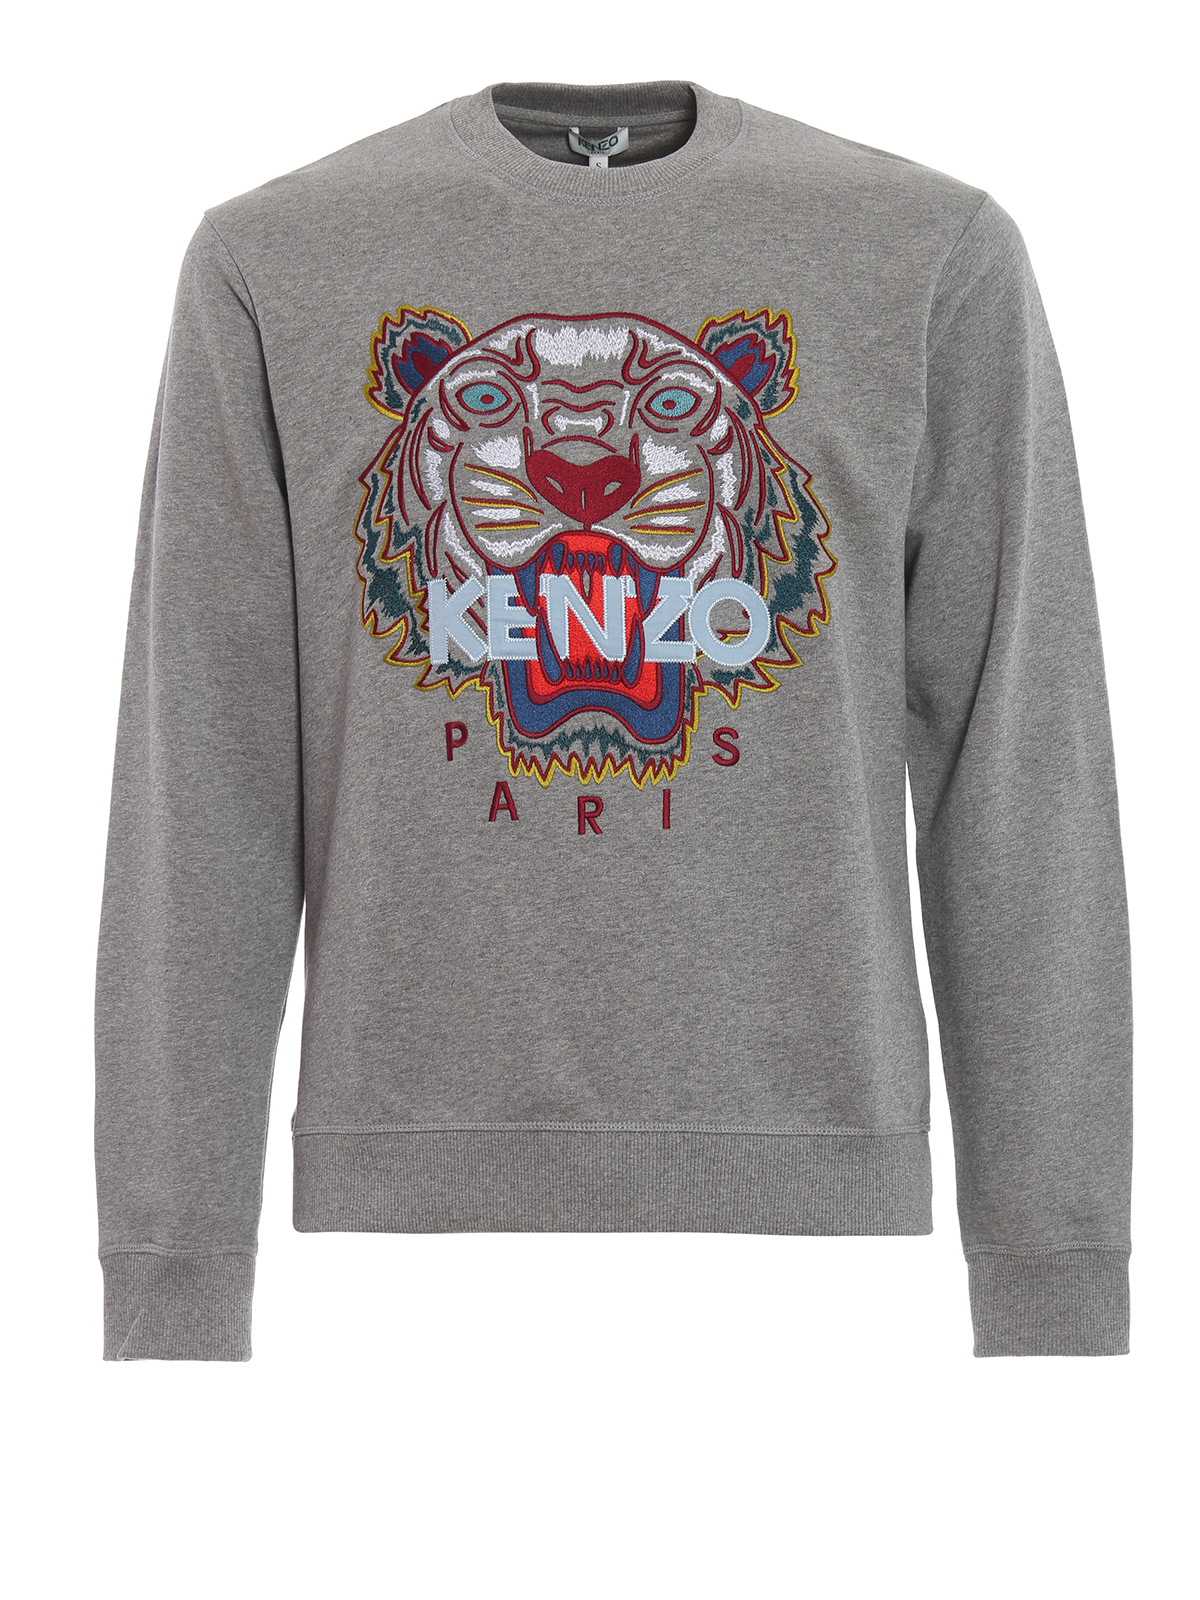 Kenzo - Kenzo Paris Tiger grey cotton 